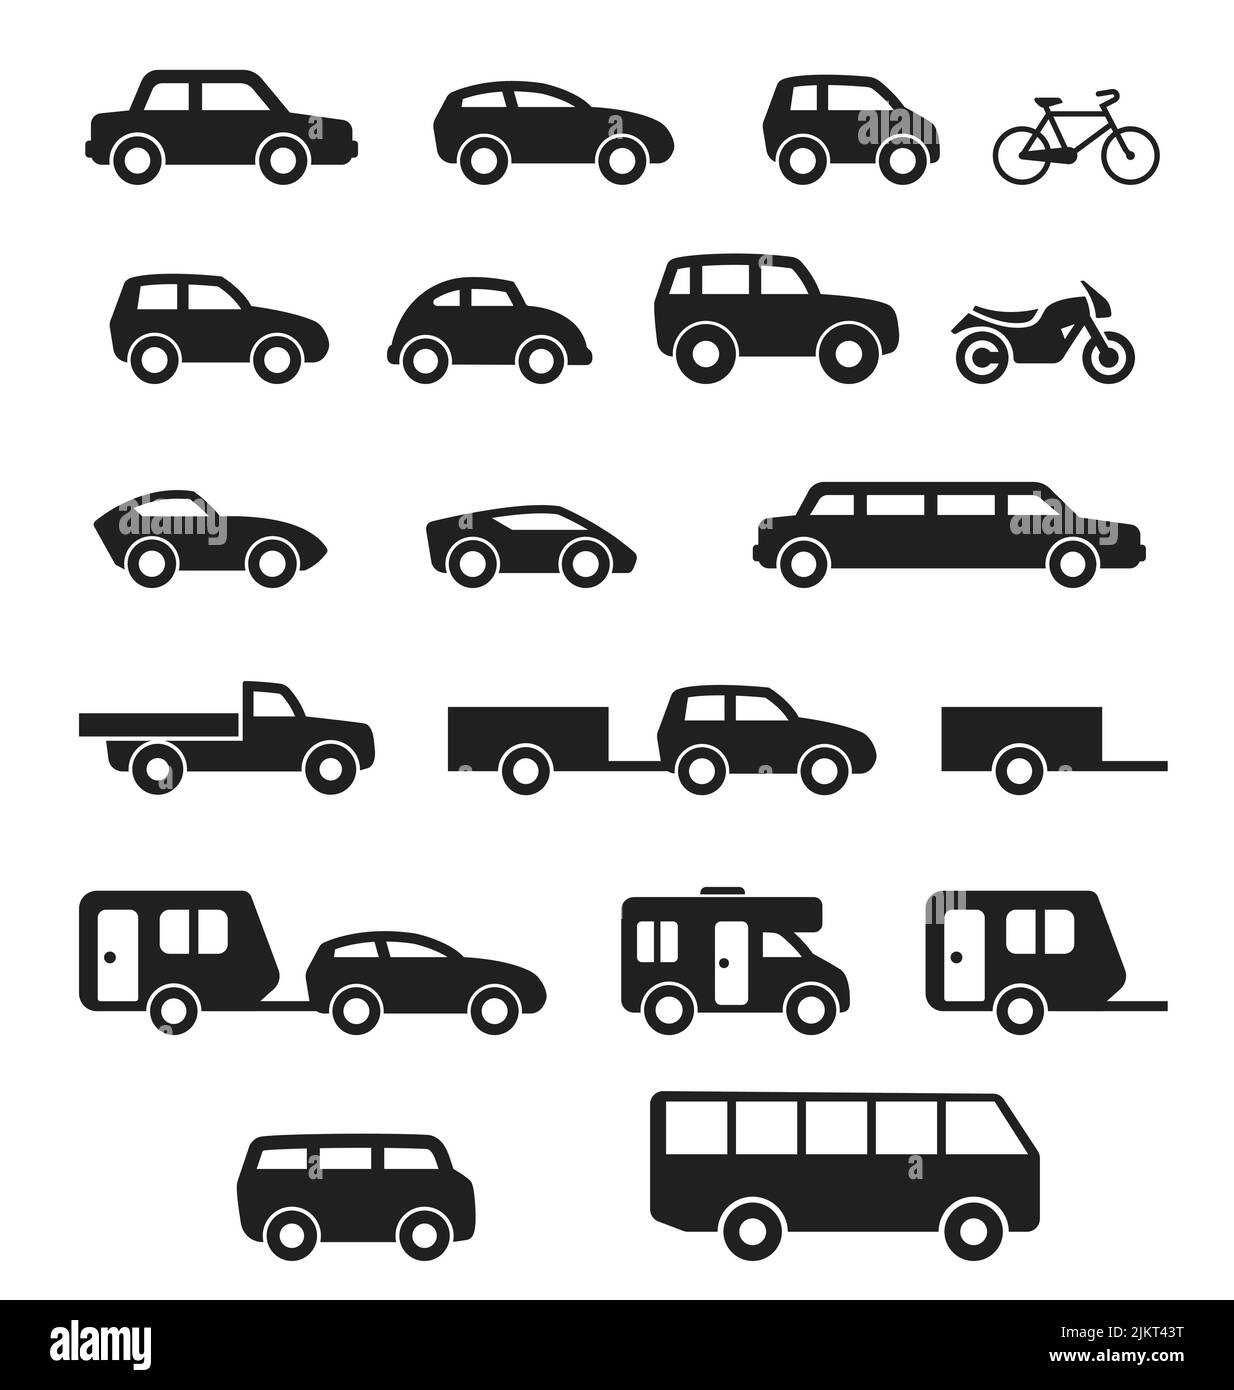 divers véhicule de voiture civile silhouette simple ensemble de vues latérales icône symbole vecteur isolé sur fond blanc Illustration de Vecteur